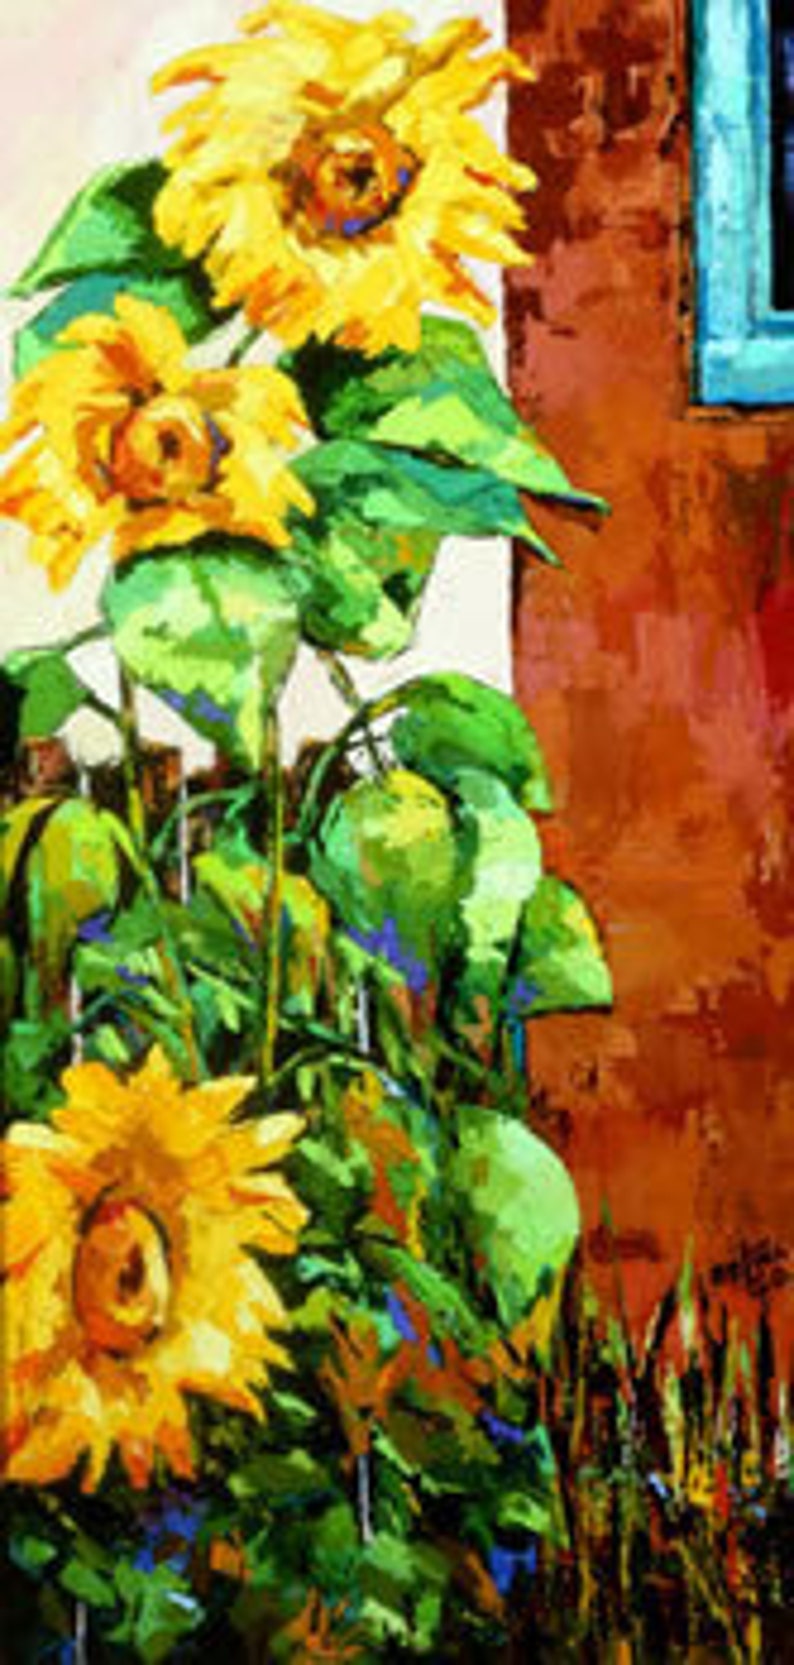 Sunflowers, Sunflower, Sunflower Art. Sunflower Gift, Sunflower Wall Art, Sunflower Decor, Sunflower Print, Sunflower Art Print, Garden Art image 1